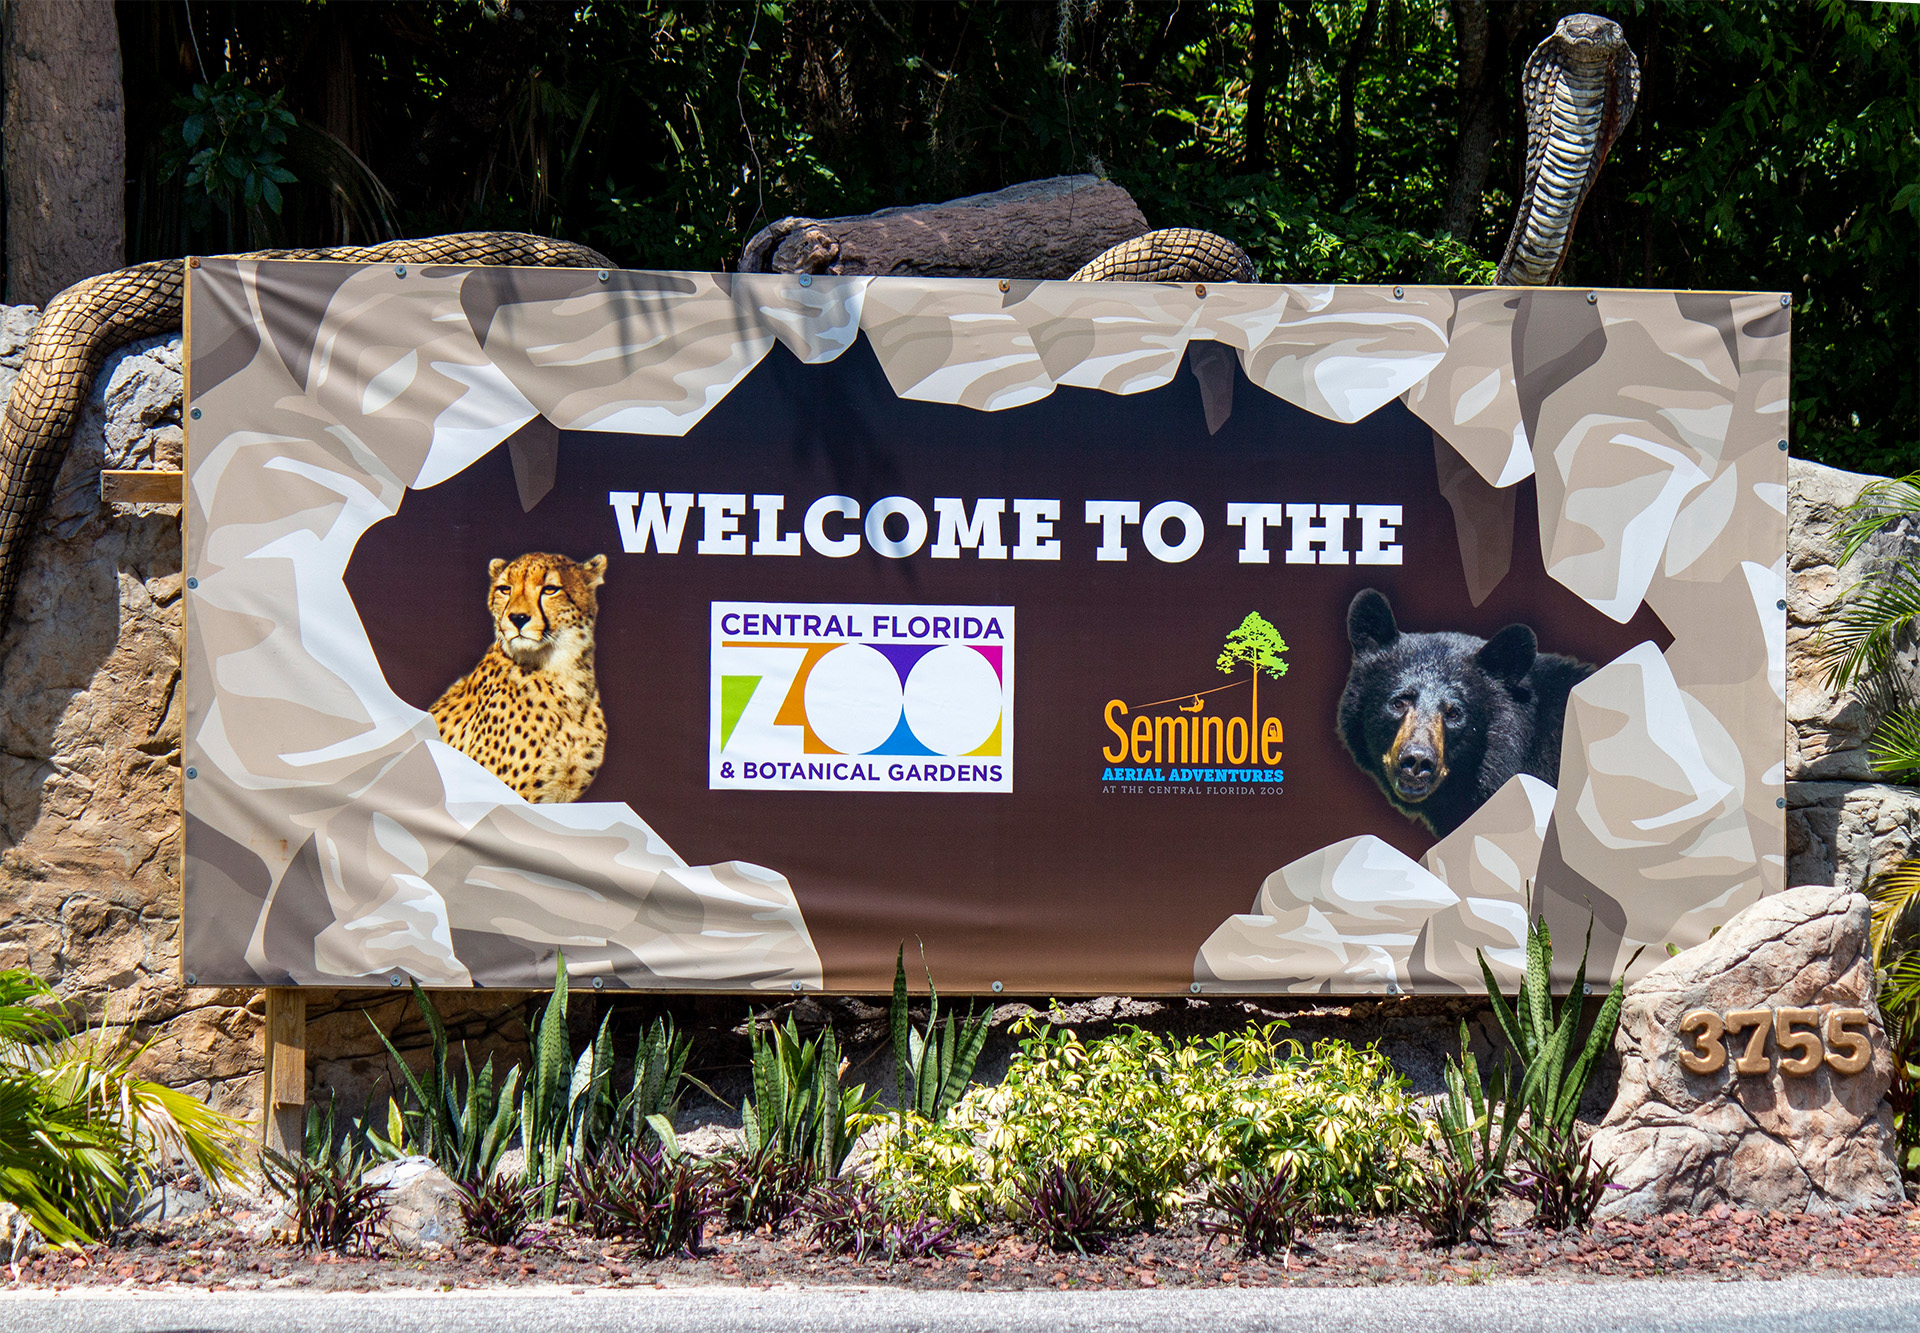 Central Florida Zoo Botanical Gardens Family Fun In Central